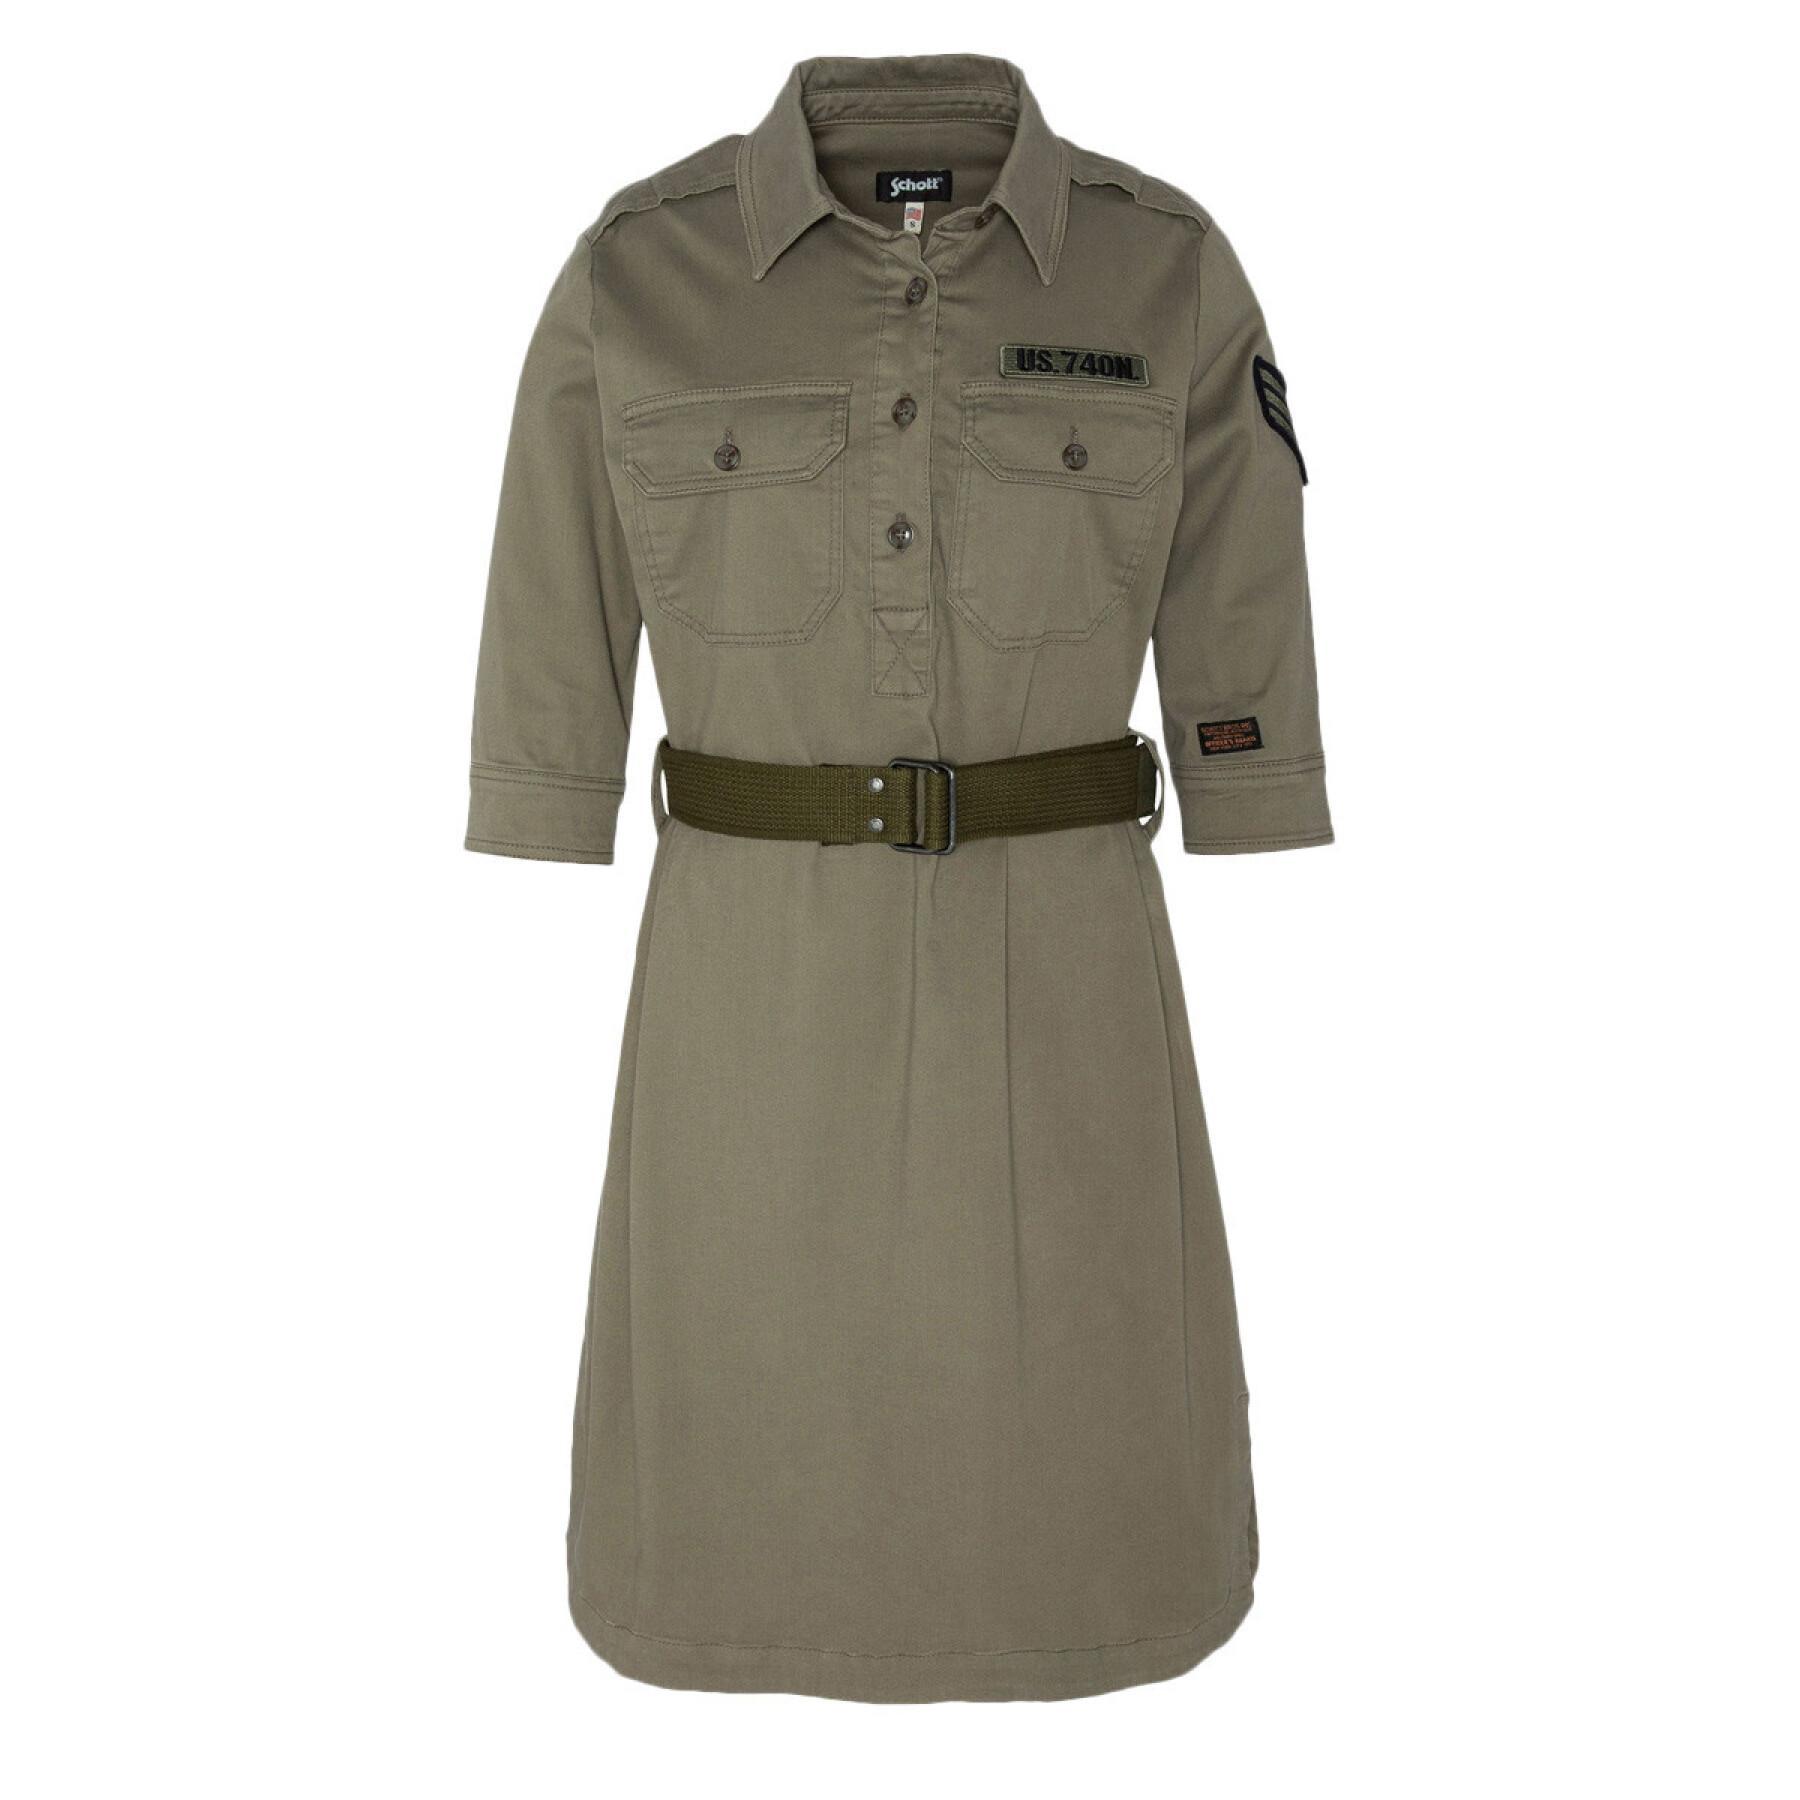 Vestuário feminino Schott Militaire